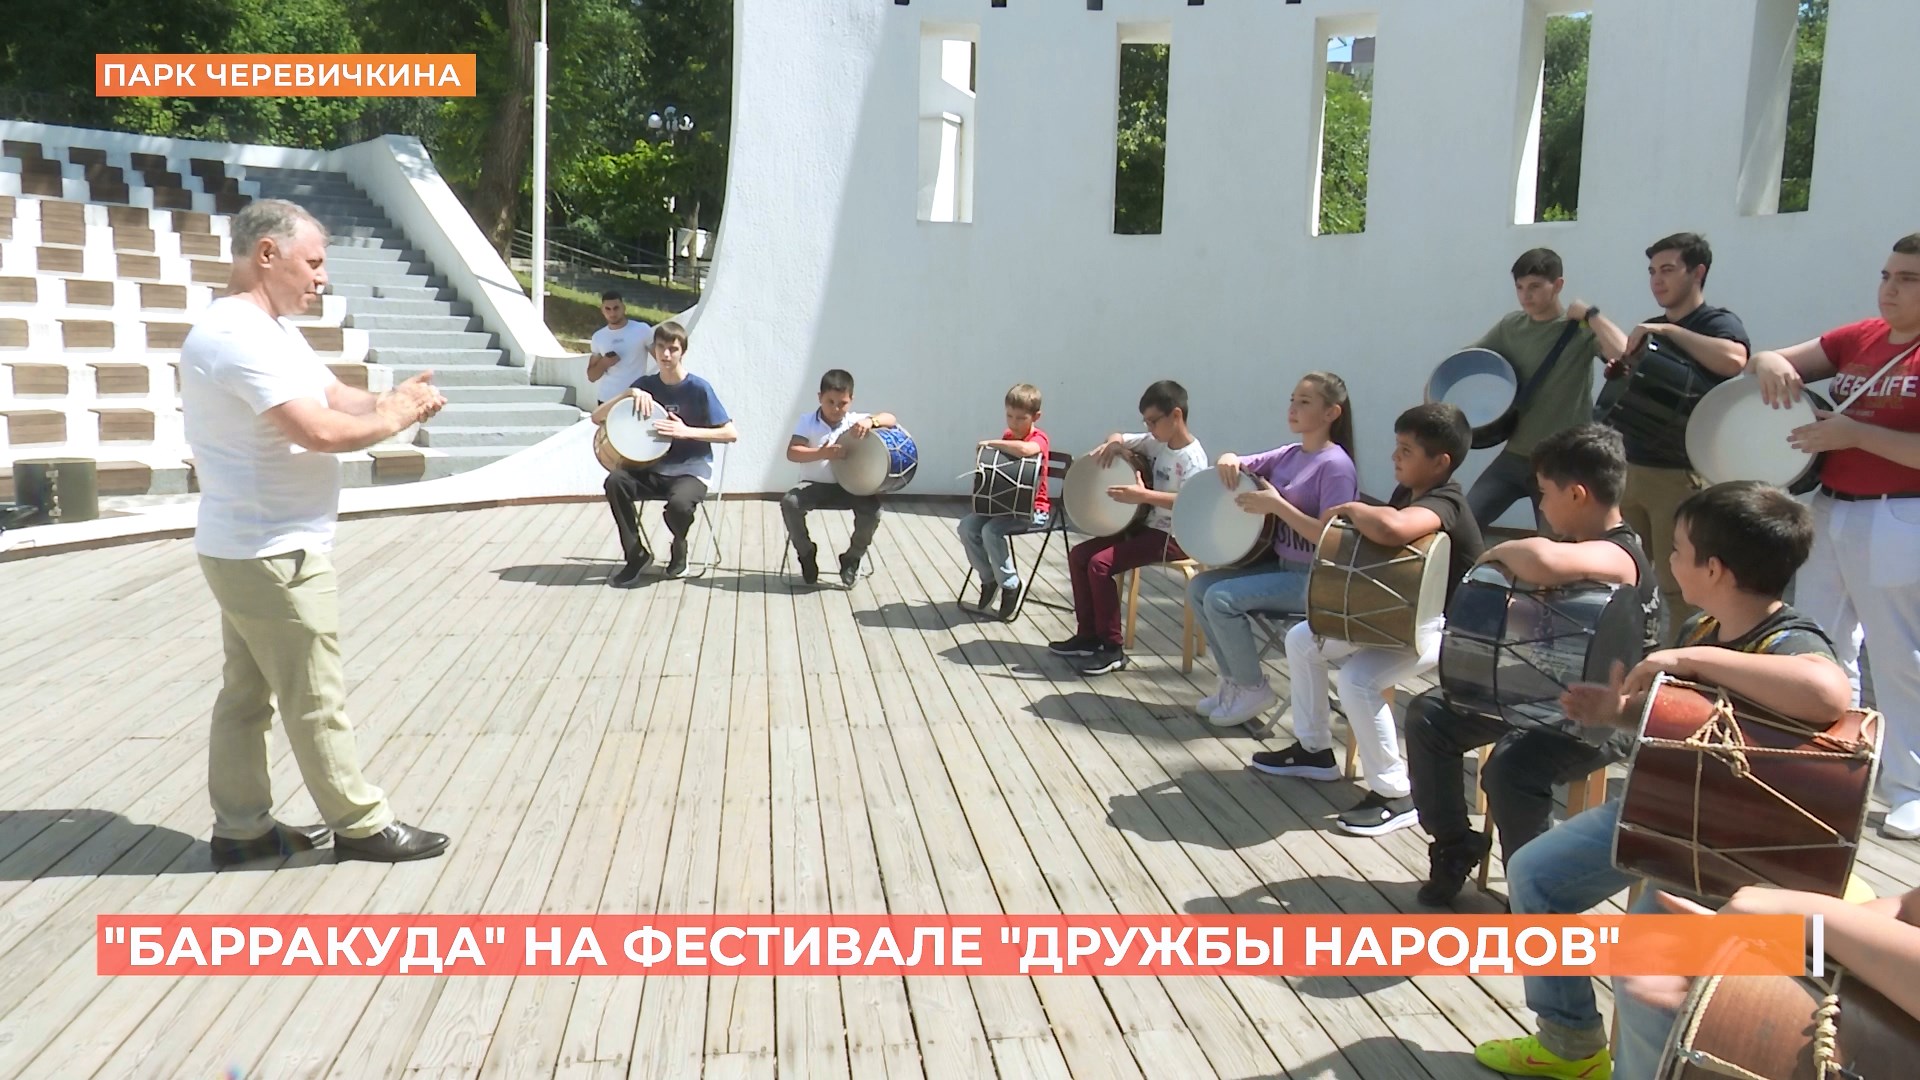 Ростовский музыкальный коллектив «Баракуда» выступил на фестивале в Москве